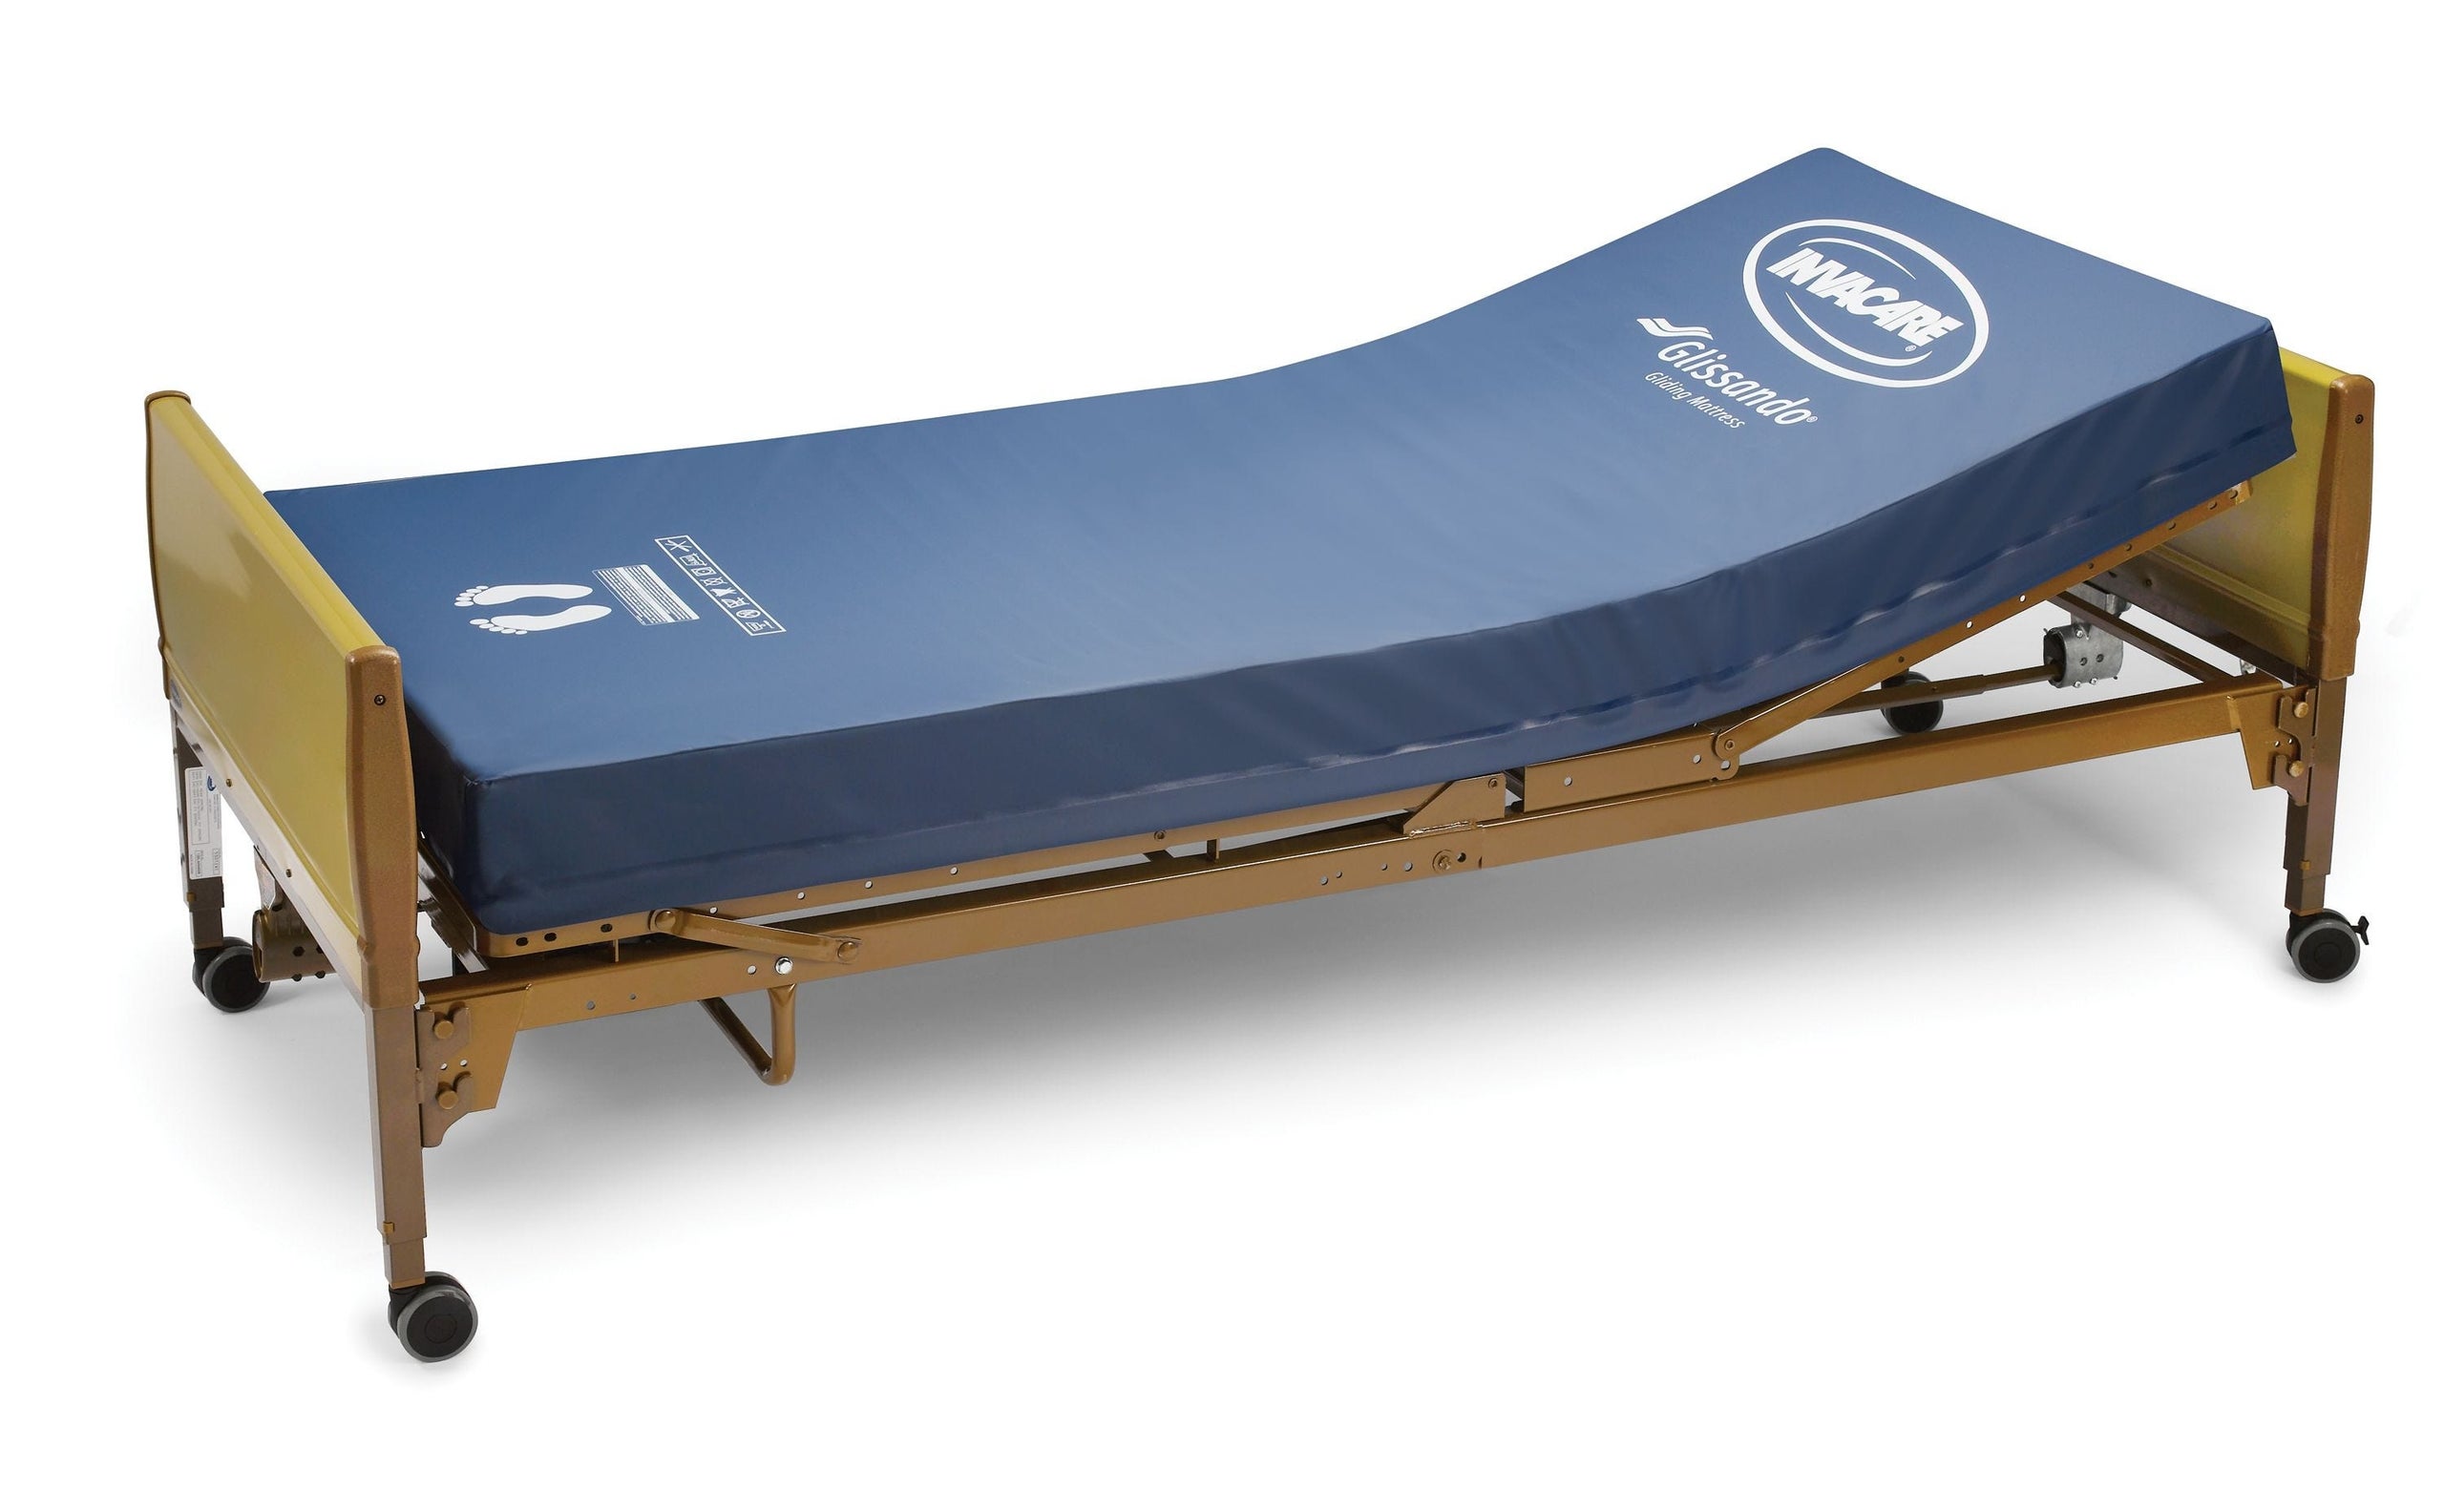 invacare air flotation mattress overlay